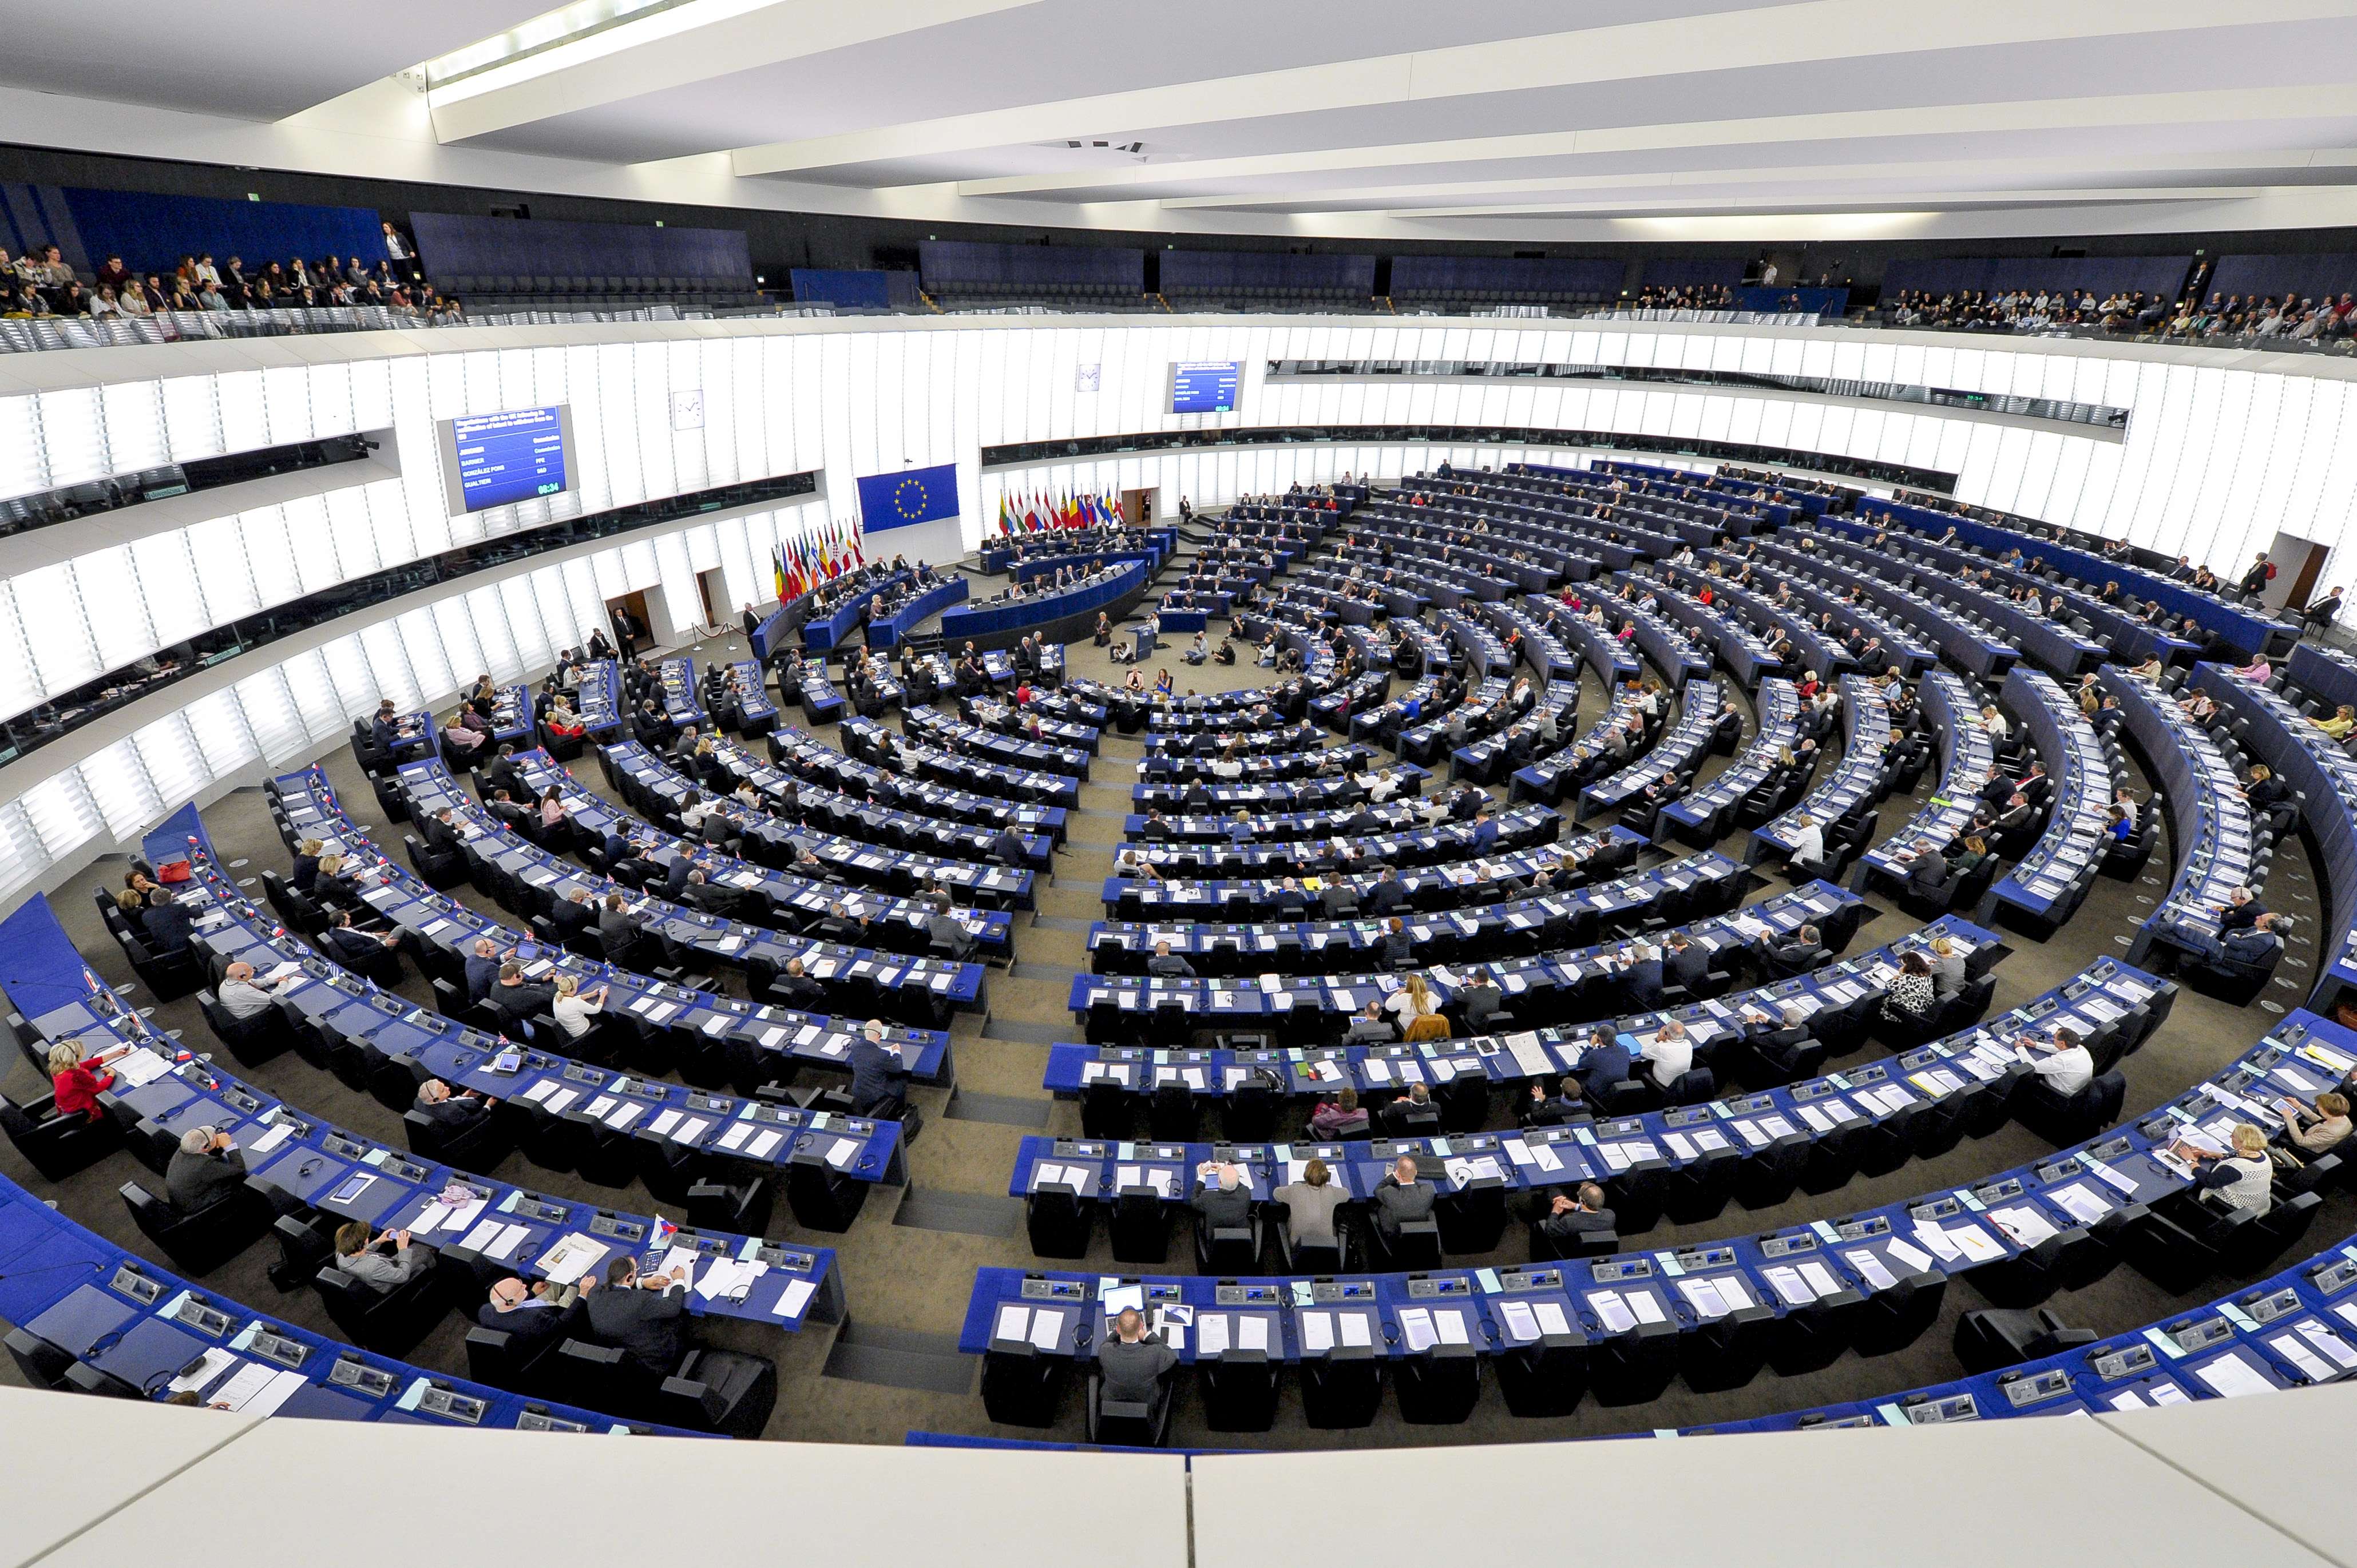 Ακροδεξιά ακριβά γούστα! Μισό εκατομμύριο ευρώ σε σαμπάνιες και δώρα  ξόδεψαν στο Ευρωκοινοβούλιο